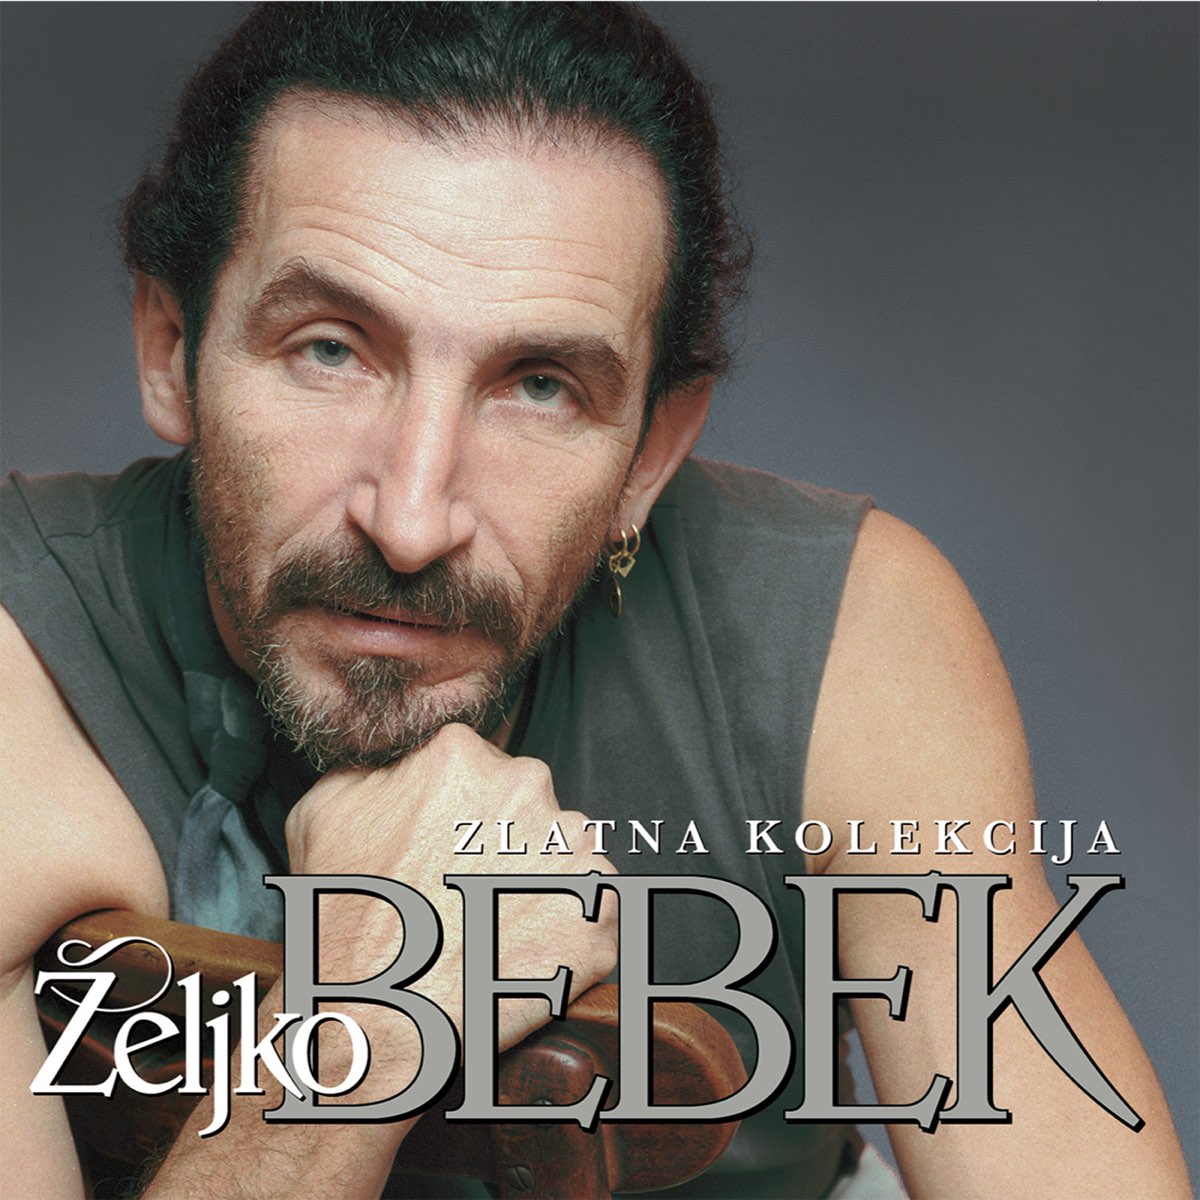 Zlatna Kolekcija - Album by Željko Bebek - Apple Music